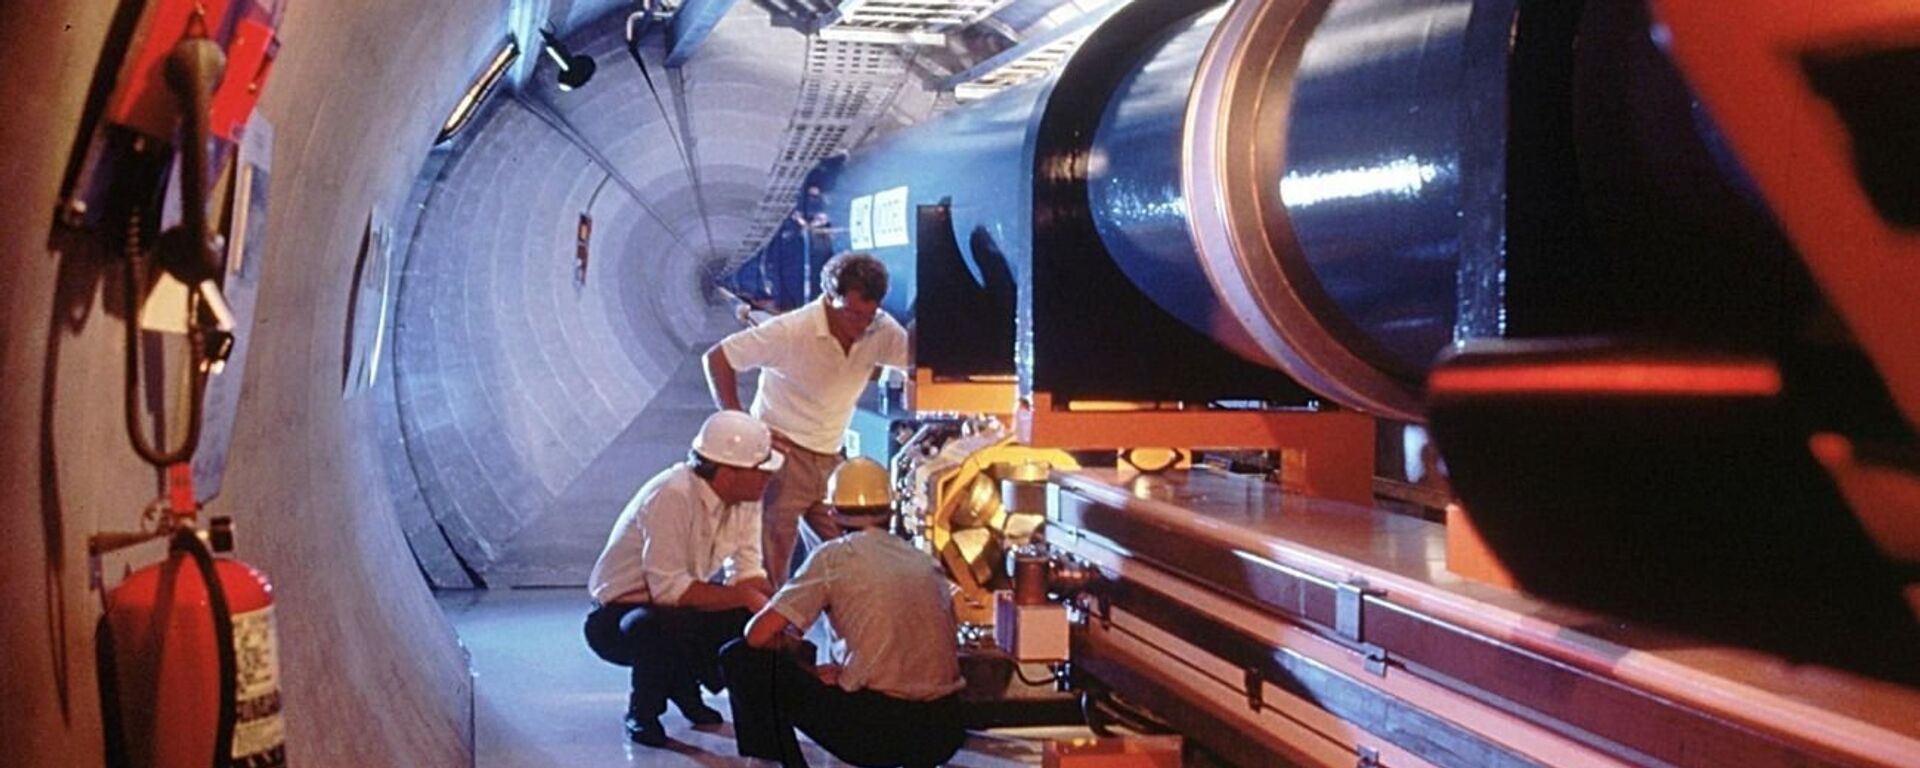 Највећа и најважнија истраживања ЦЕРН-а обављају се у Великом хадронском сударачу, подземном тунелу дугачком 27 километара на граници Швајцарске и Француске - Sputnik Србија, 1920, 02.01.2022